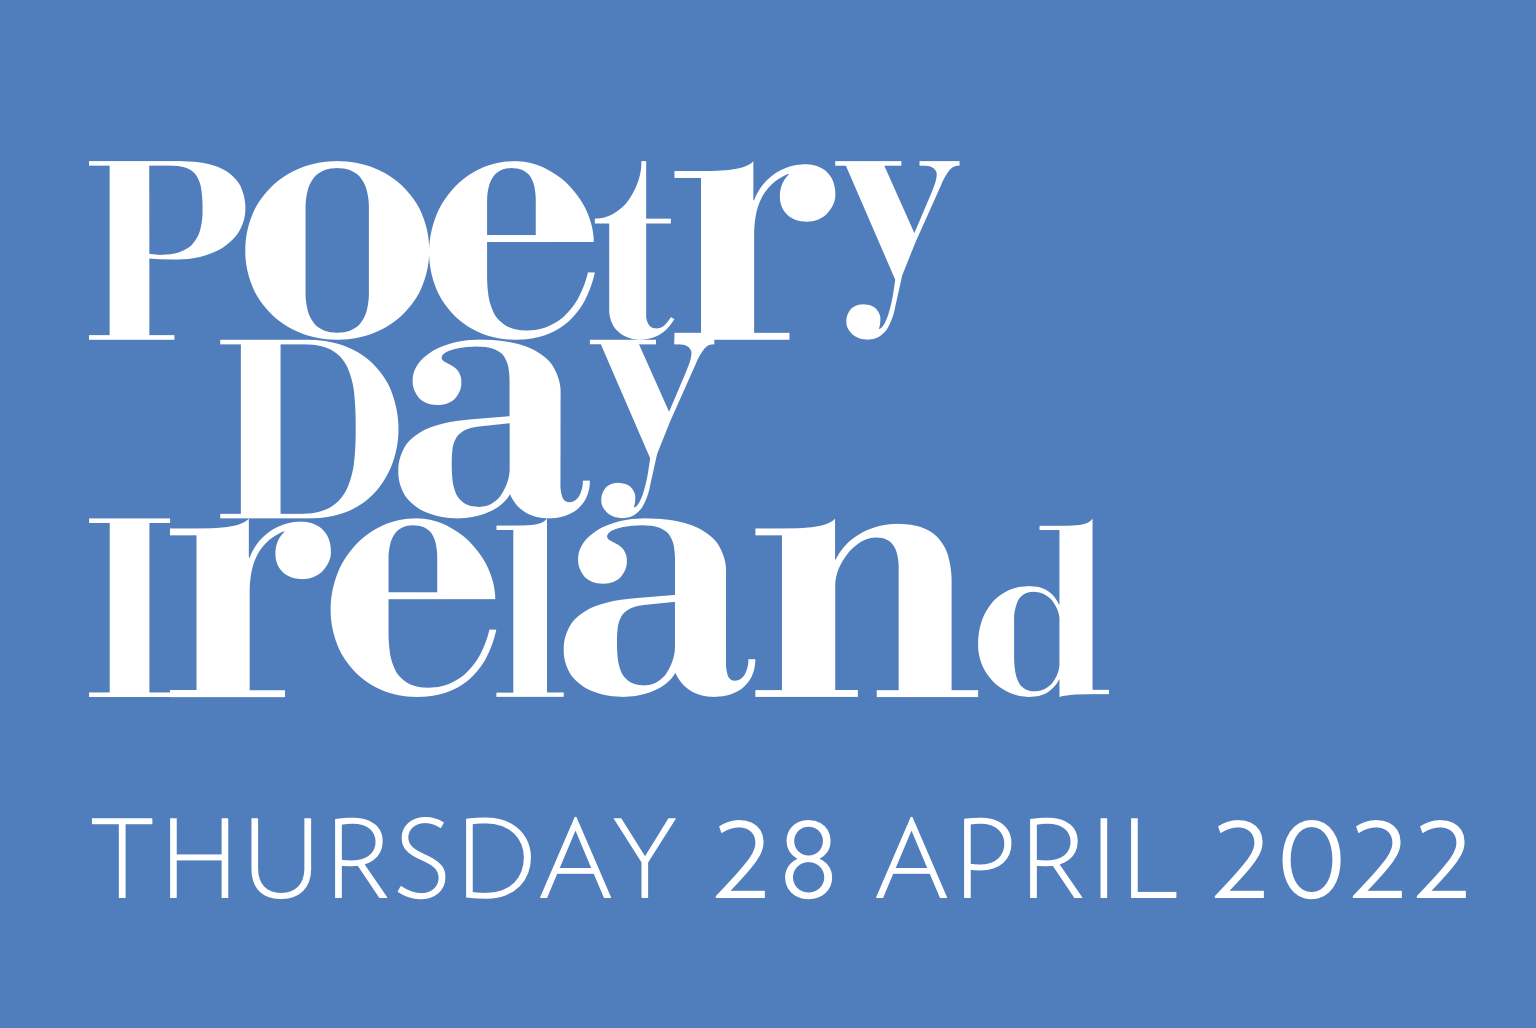 Poetry Day Ireland 2022